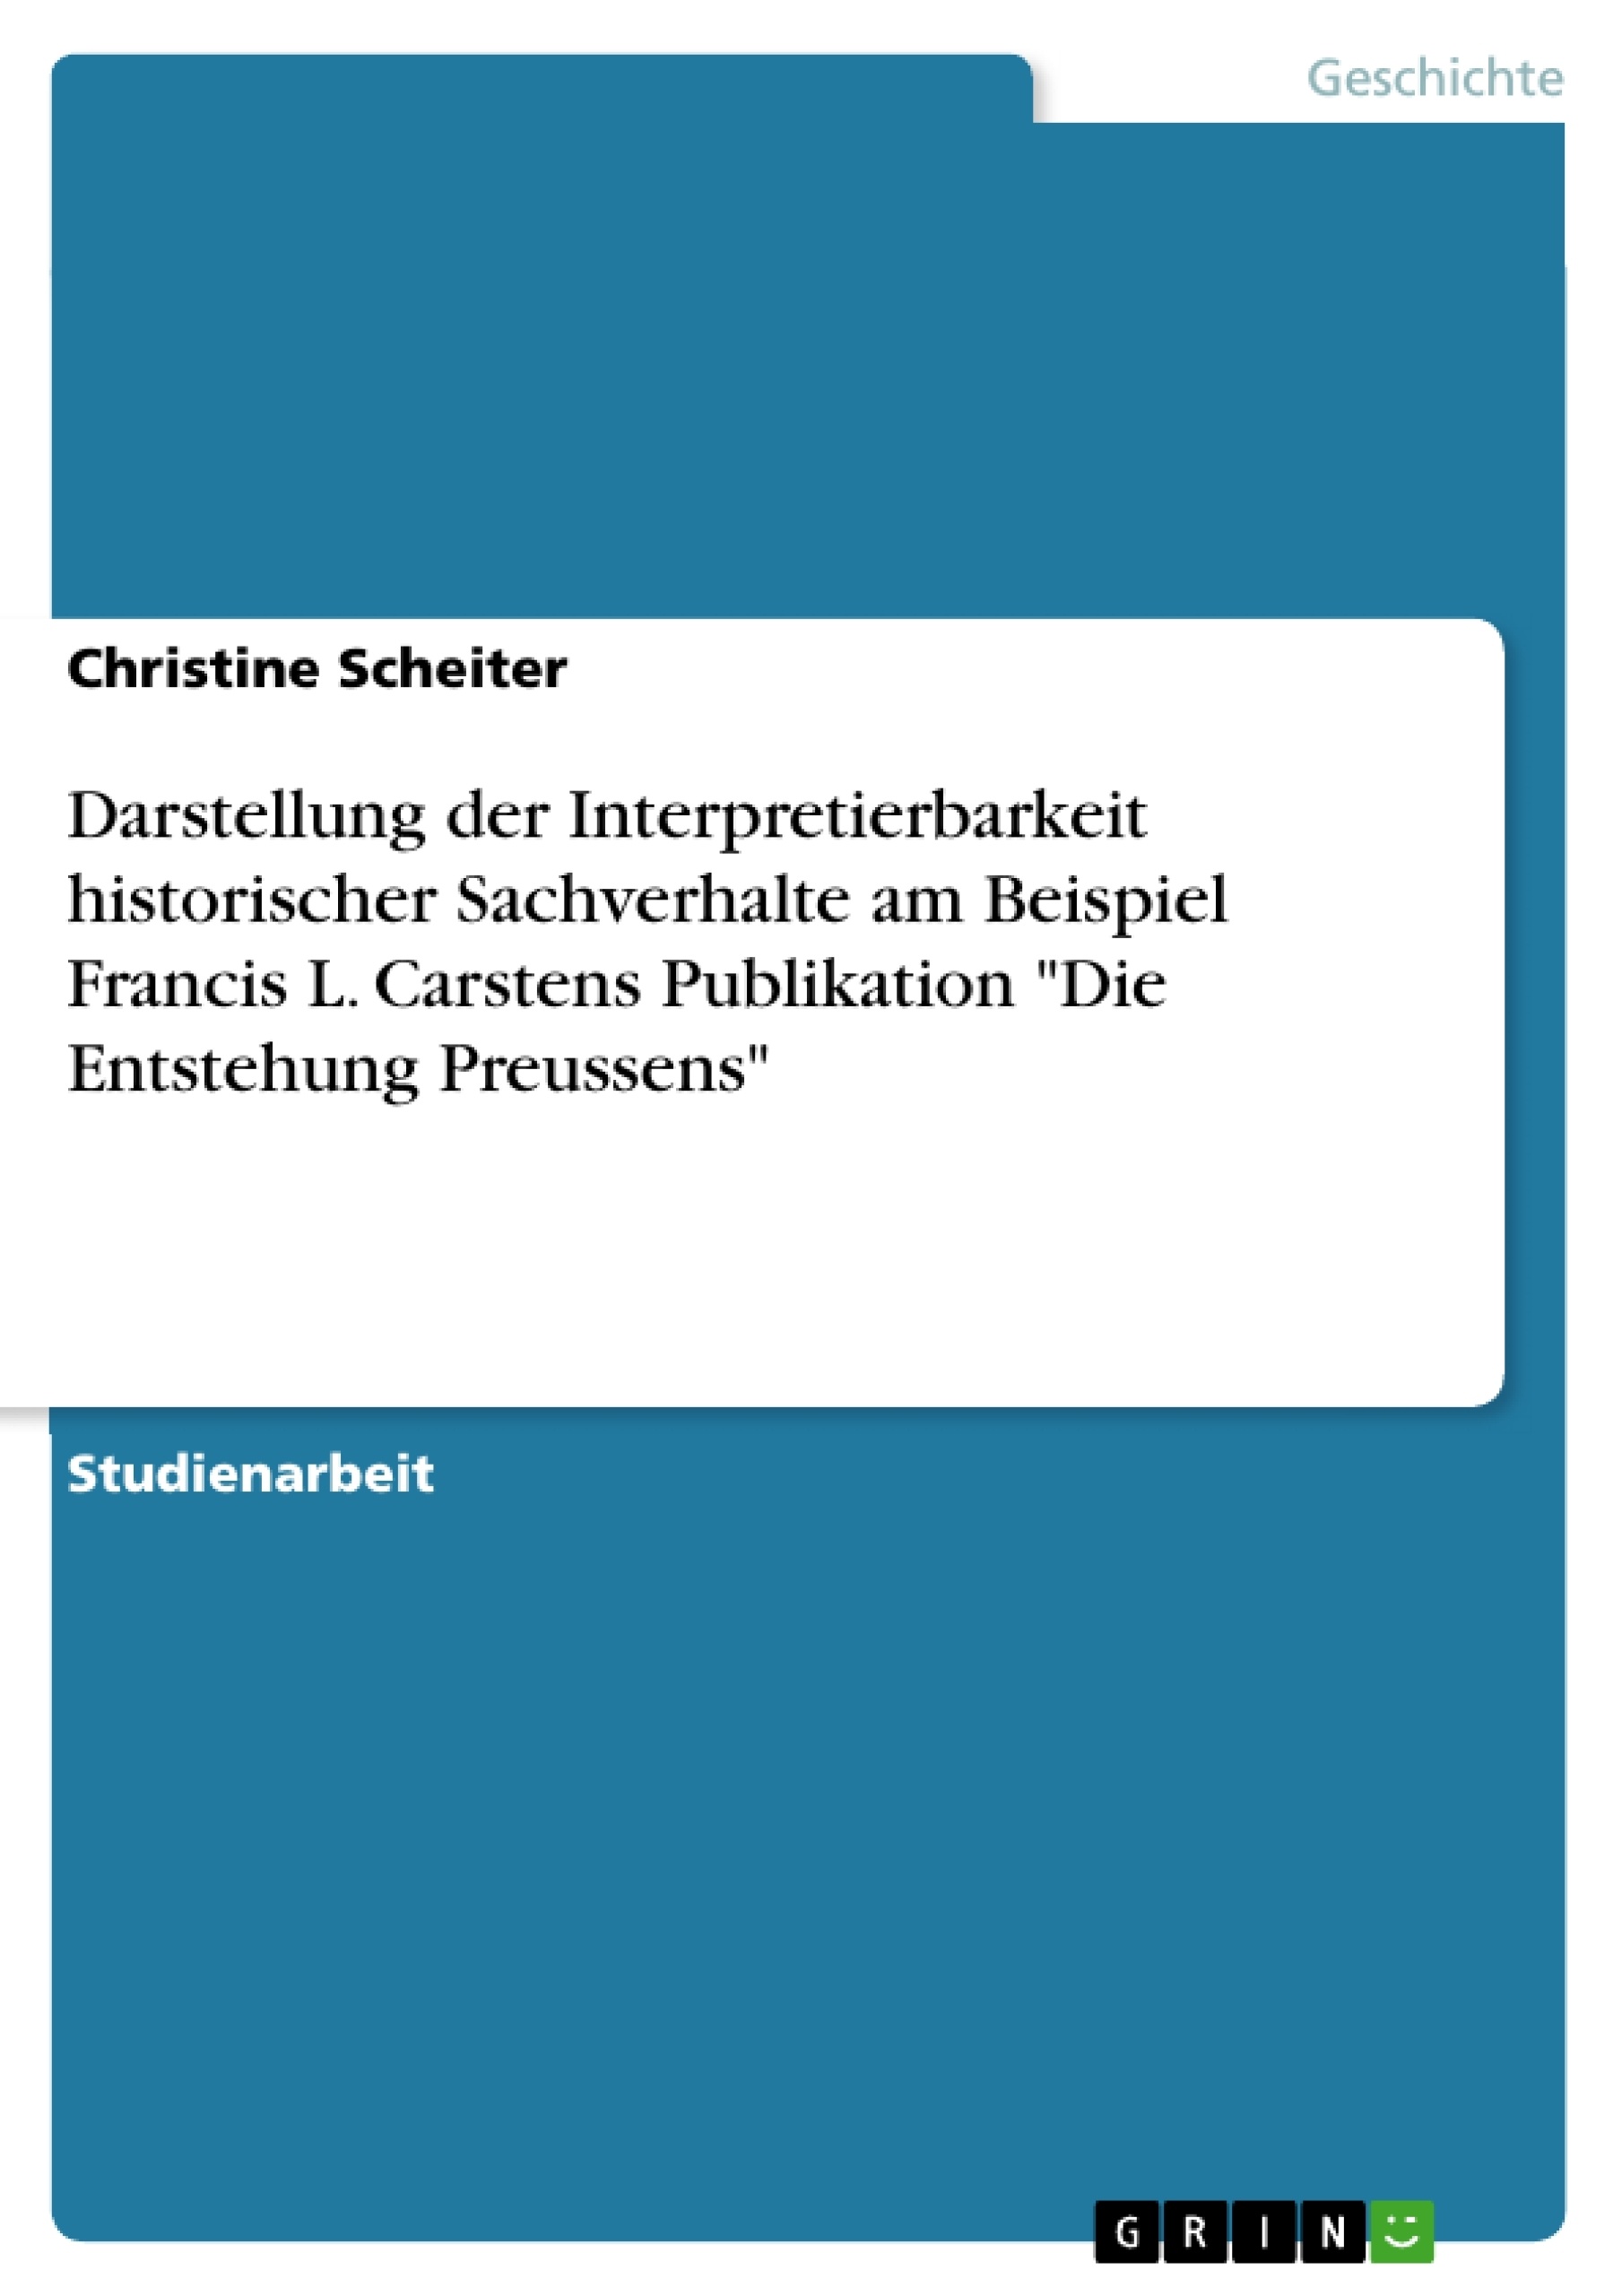 Title: Darstellung der Interpretierbarkeit historischer Sachverhalte am Beispiel Francis L. Carstens Publikation "Die Entstehung Preussens"